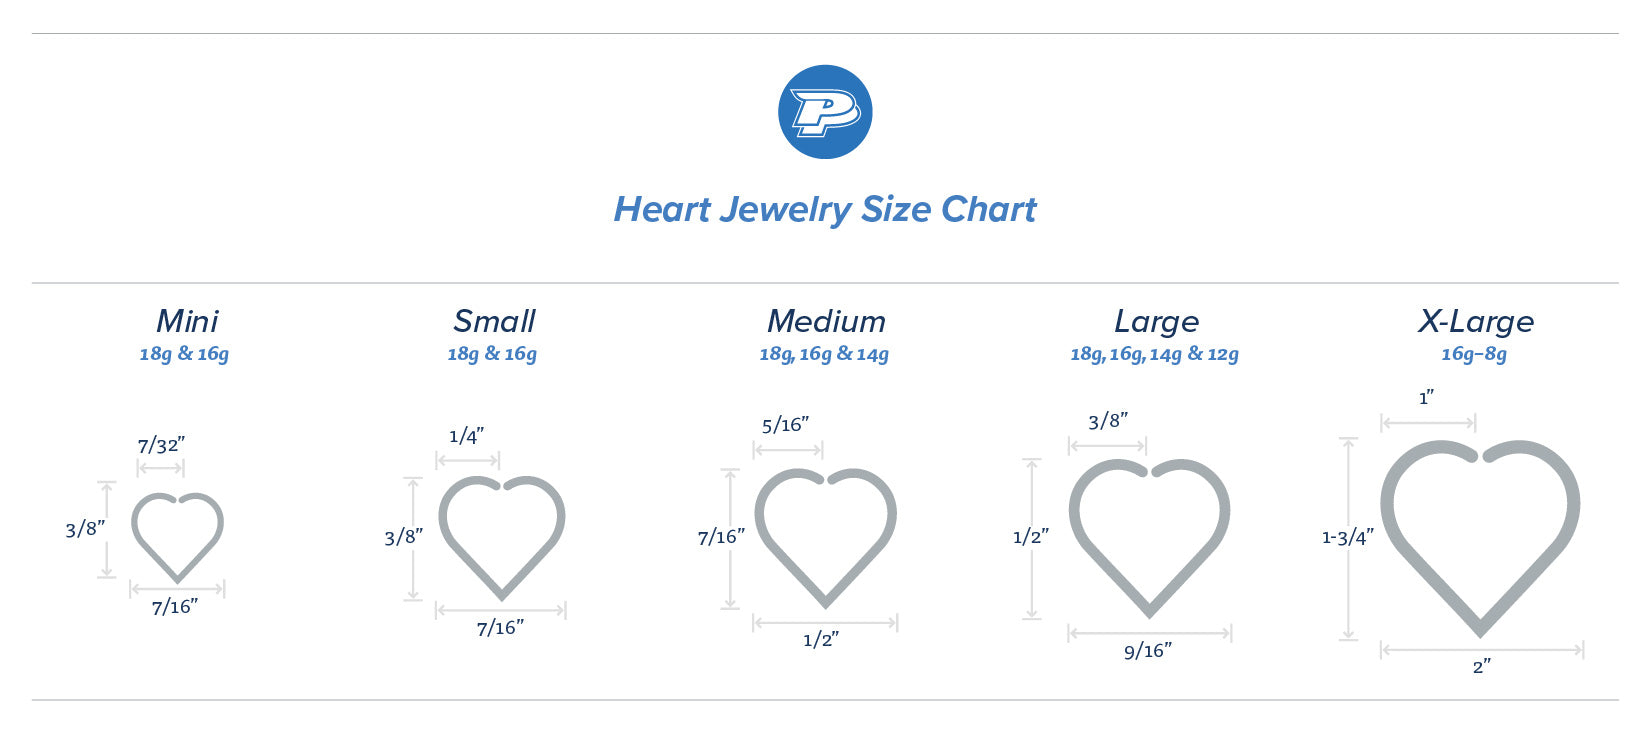 Heart Jewelry Size Chart